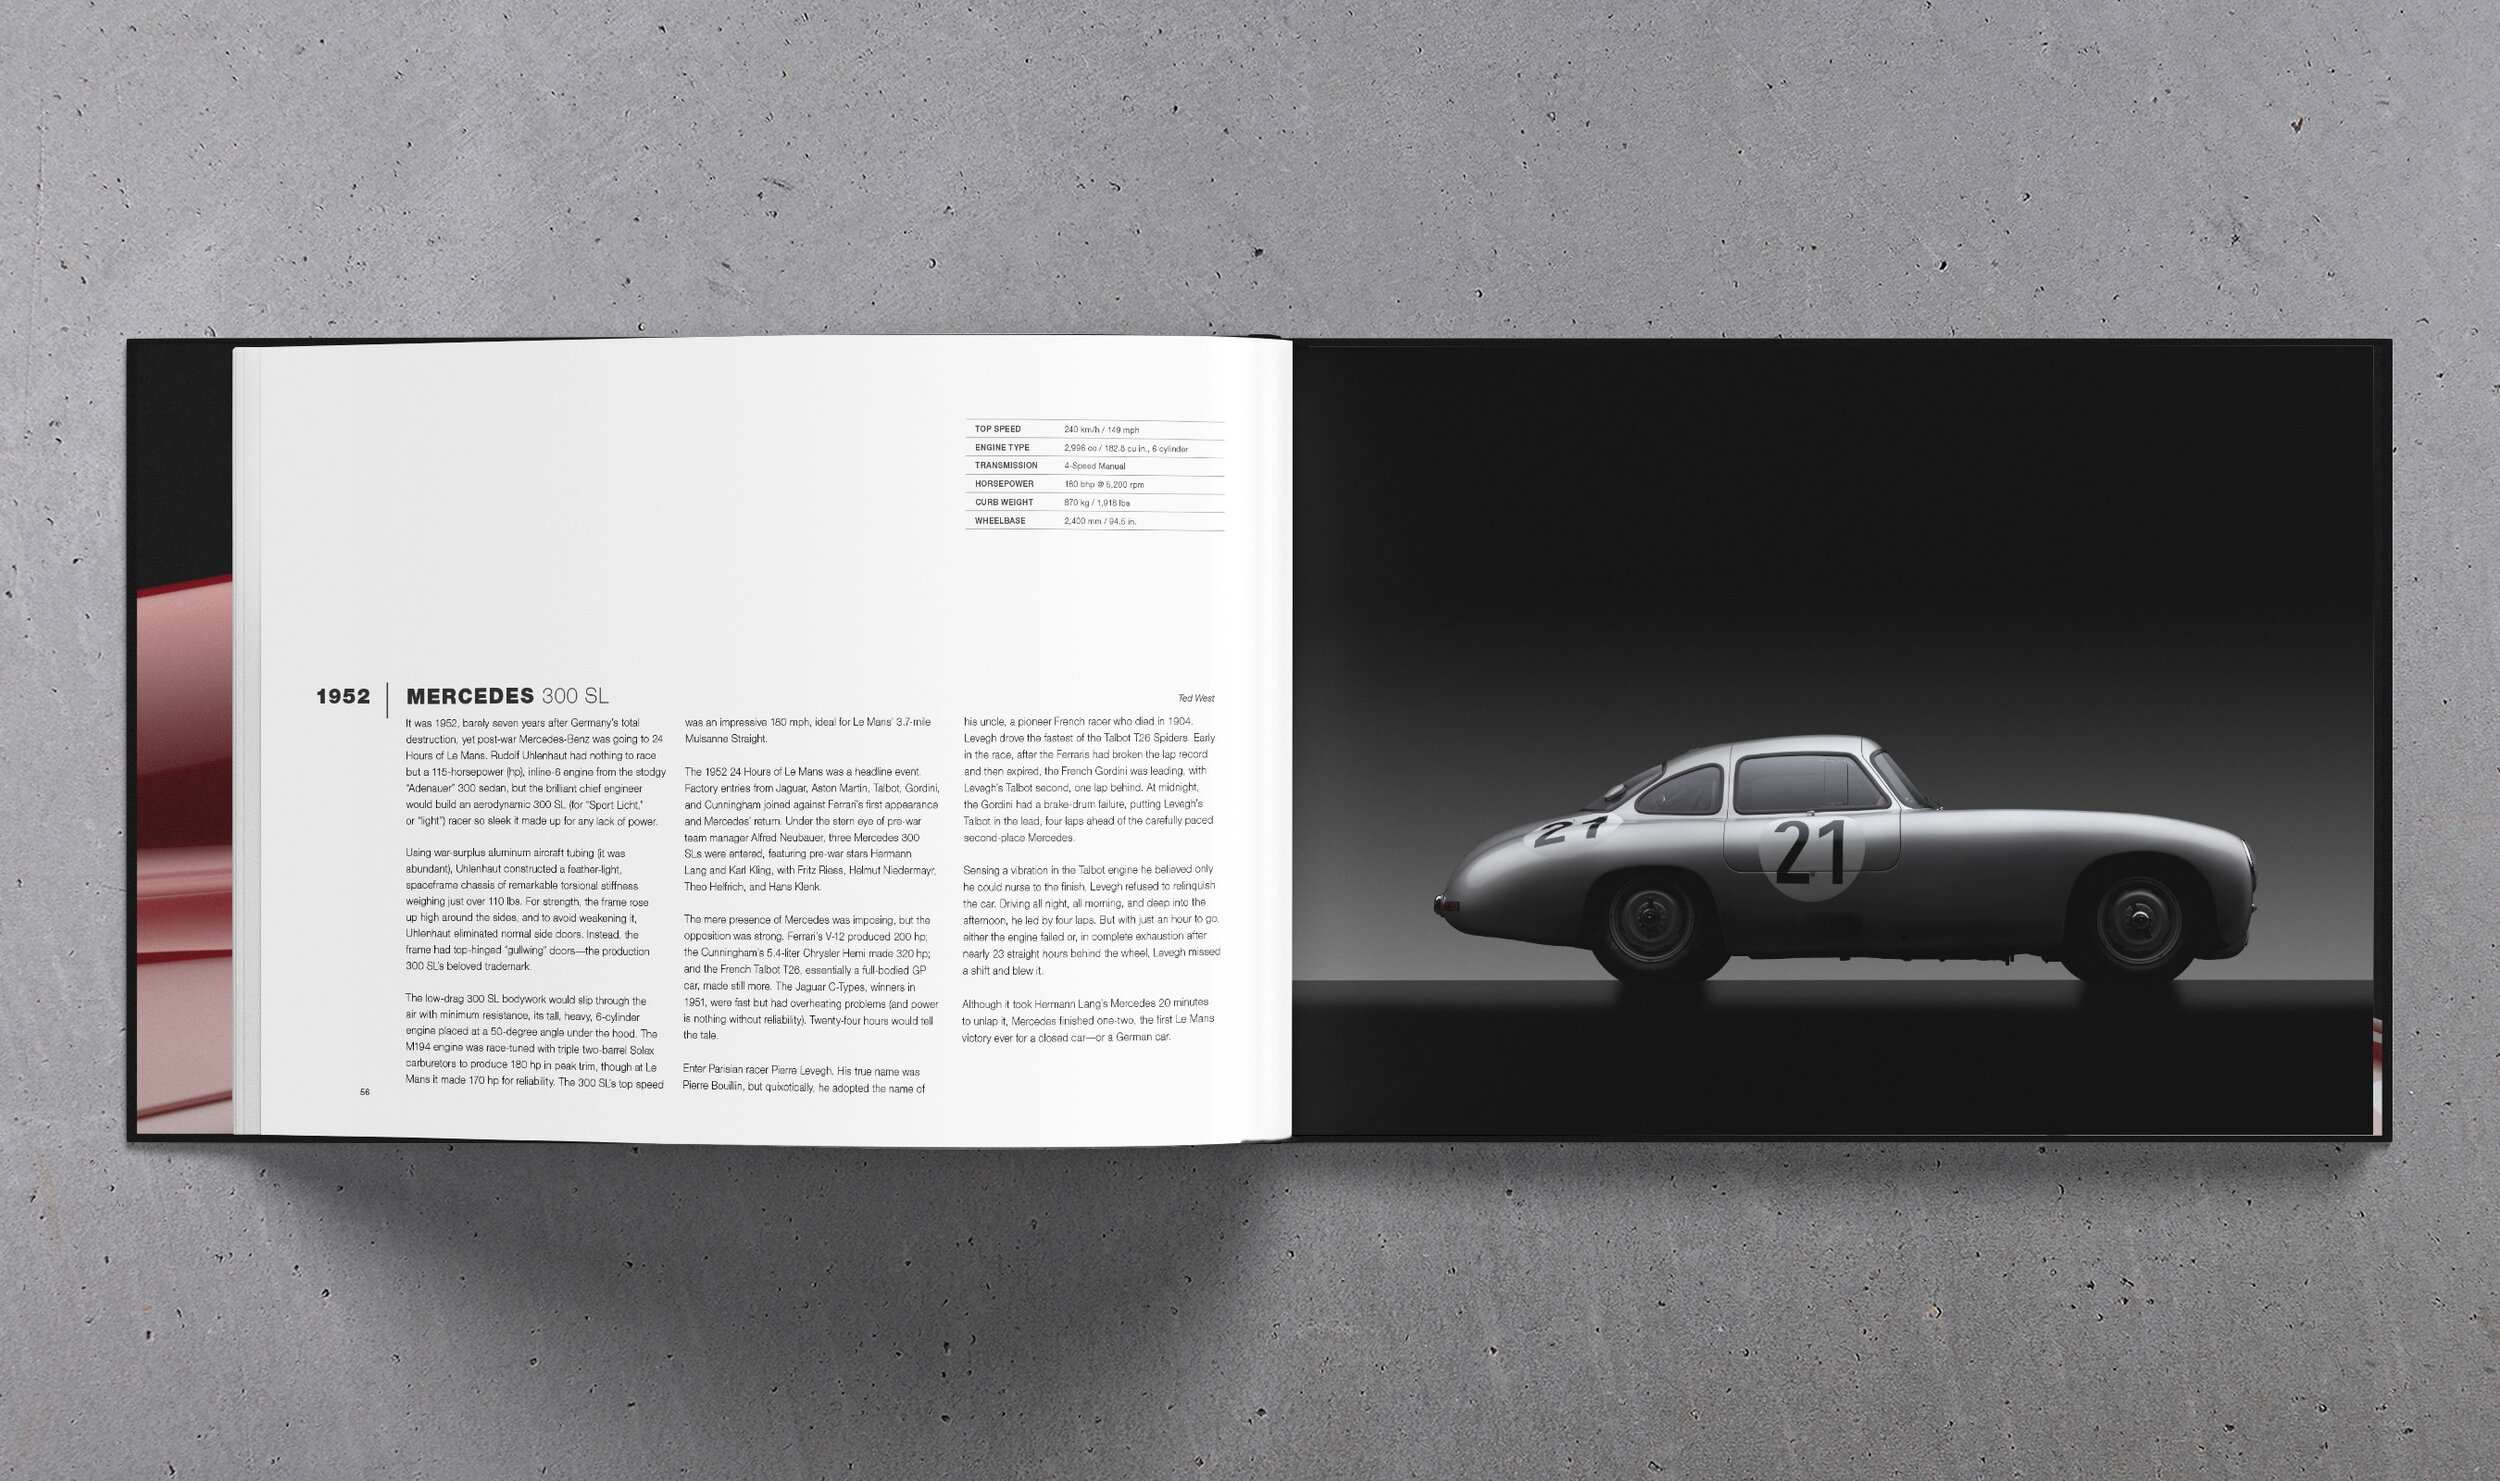 LoS_Book_1952 Mercedes1.jpg